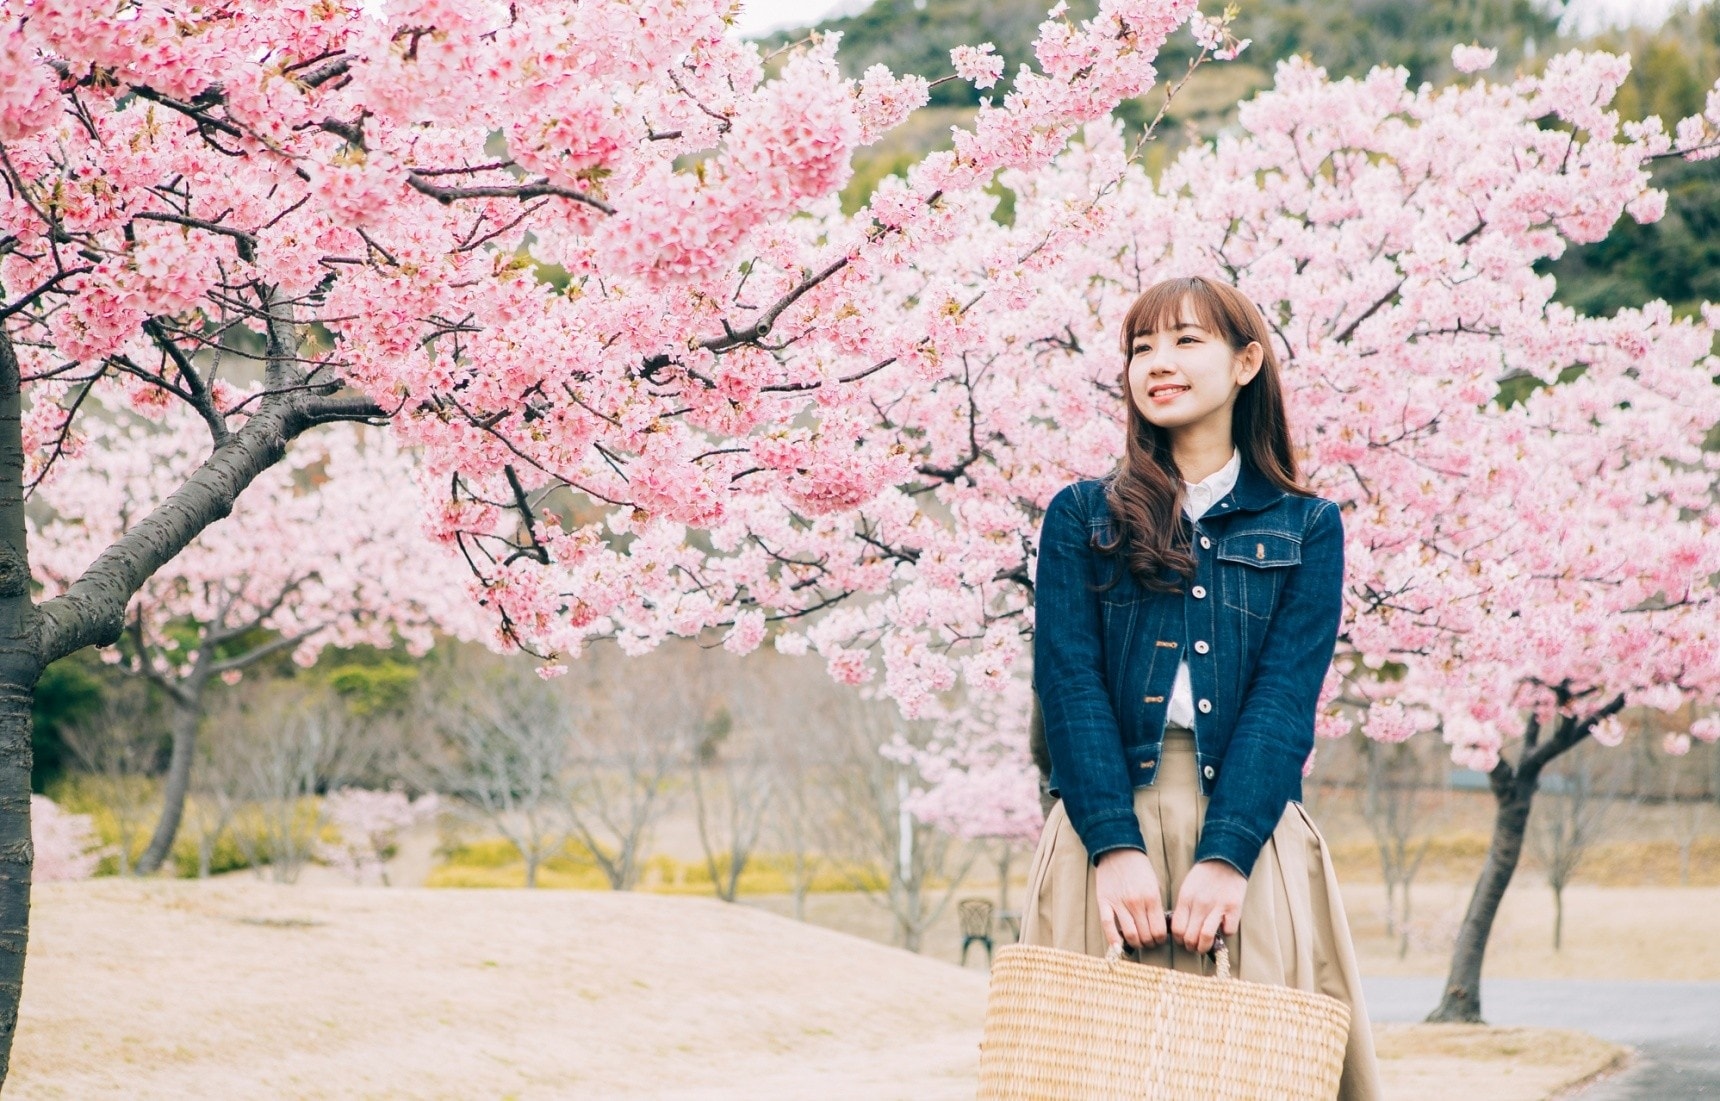 【深度日本】日本史上首次花見的主角不是櫻花而是梅花